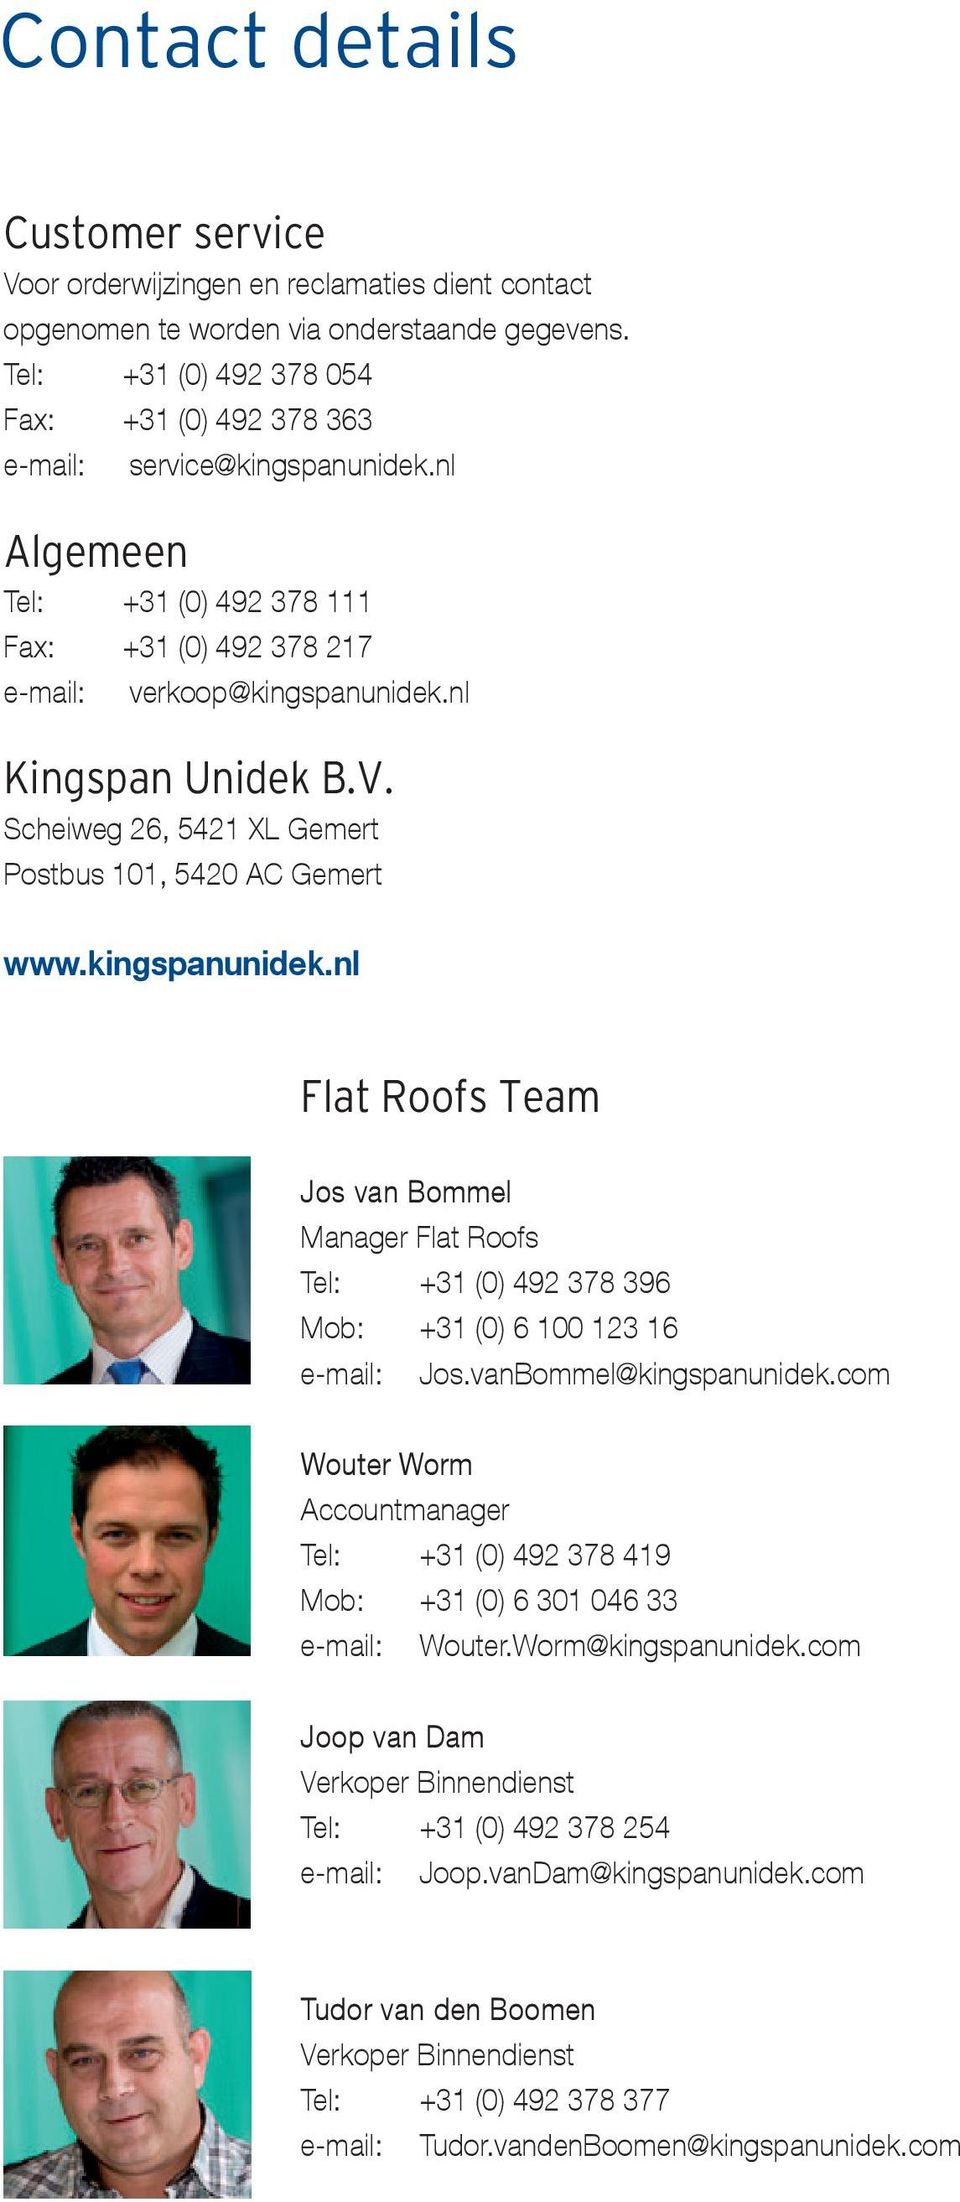 Scheiweg 26, 5421 XL Gemert Postbus 101, 5420 AC Gemert www.kingspanunidek.nl Flat Roofs Team Jos van Bommel Manager Flat Roofs Tel: +31 (0) 492 378 396 Mob: +31 (0) 6 100 123 16 e-mail: Jos.